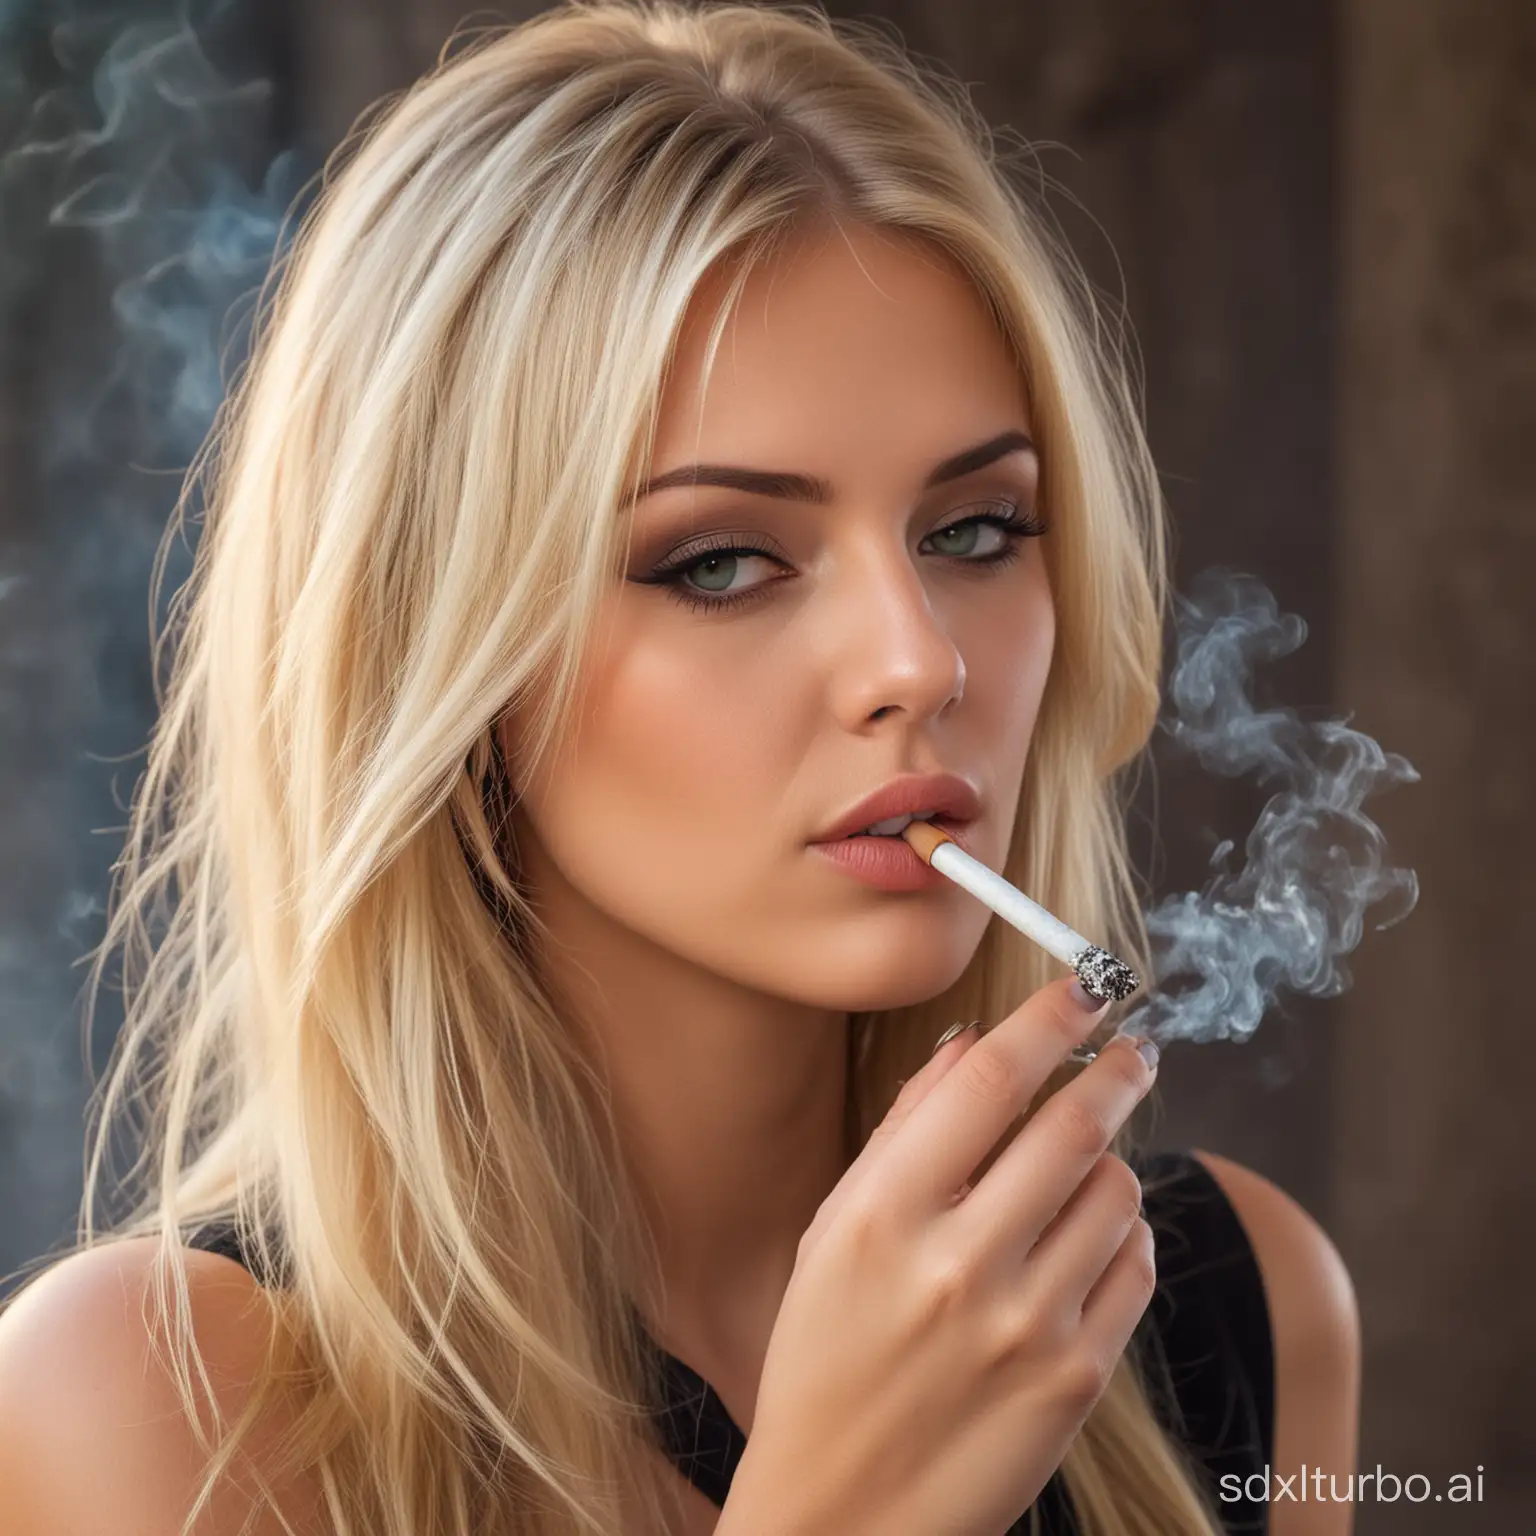 Beautiful blonde Girl smoking